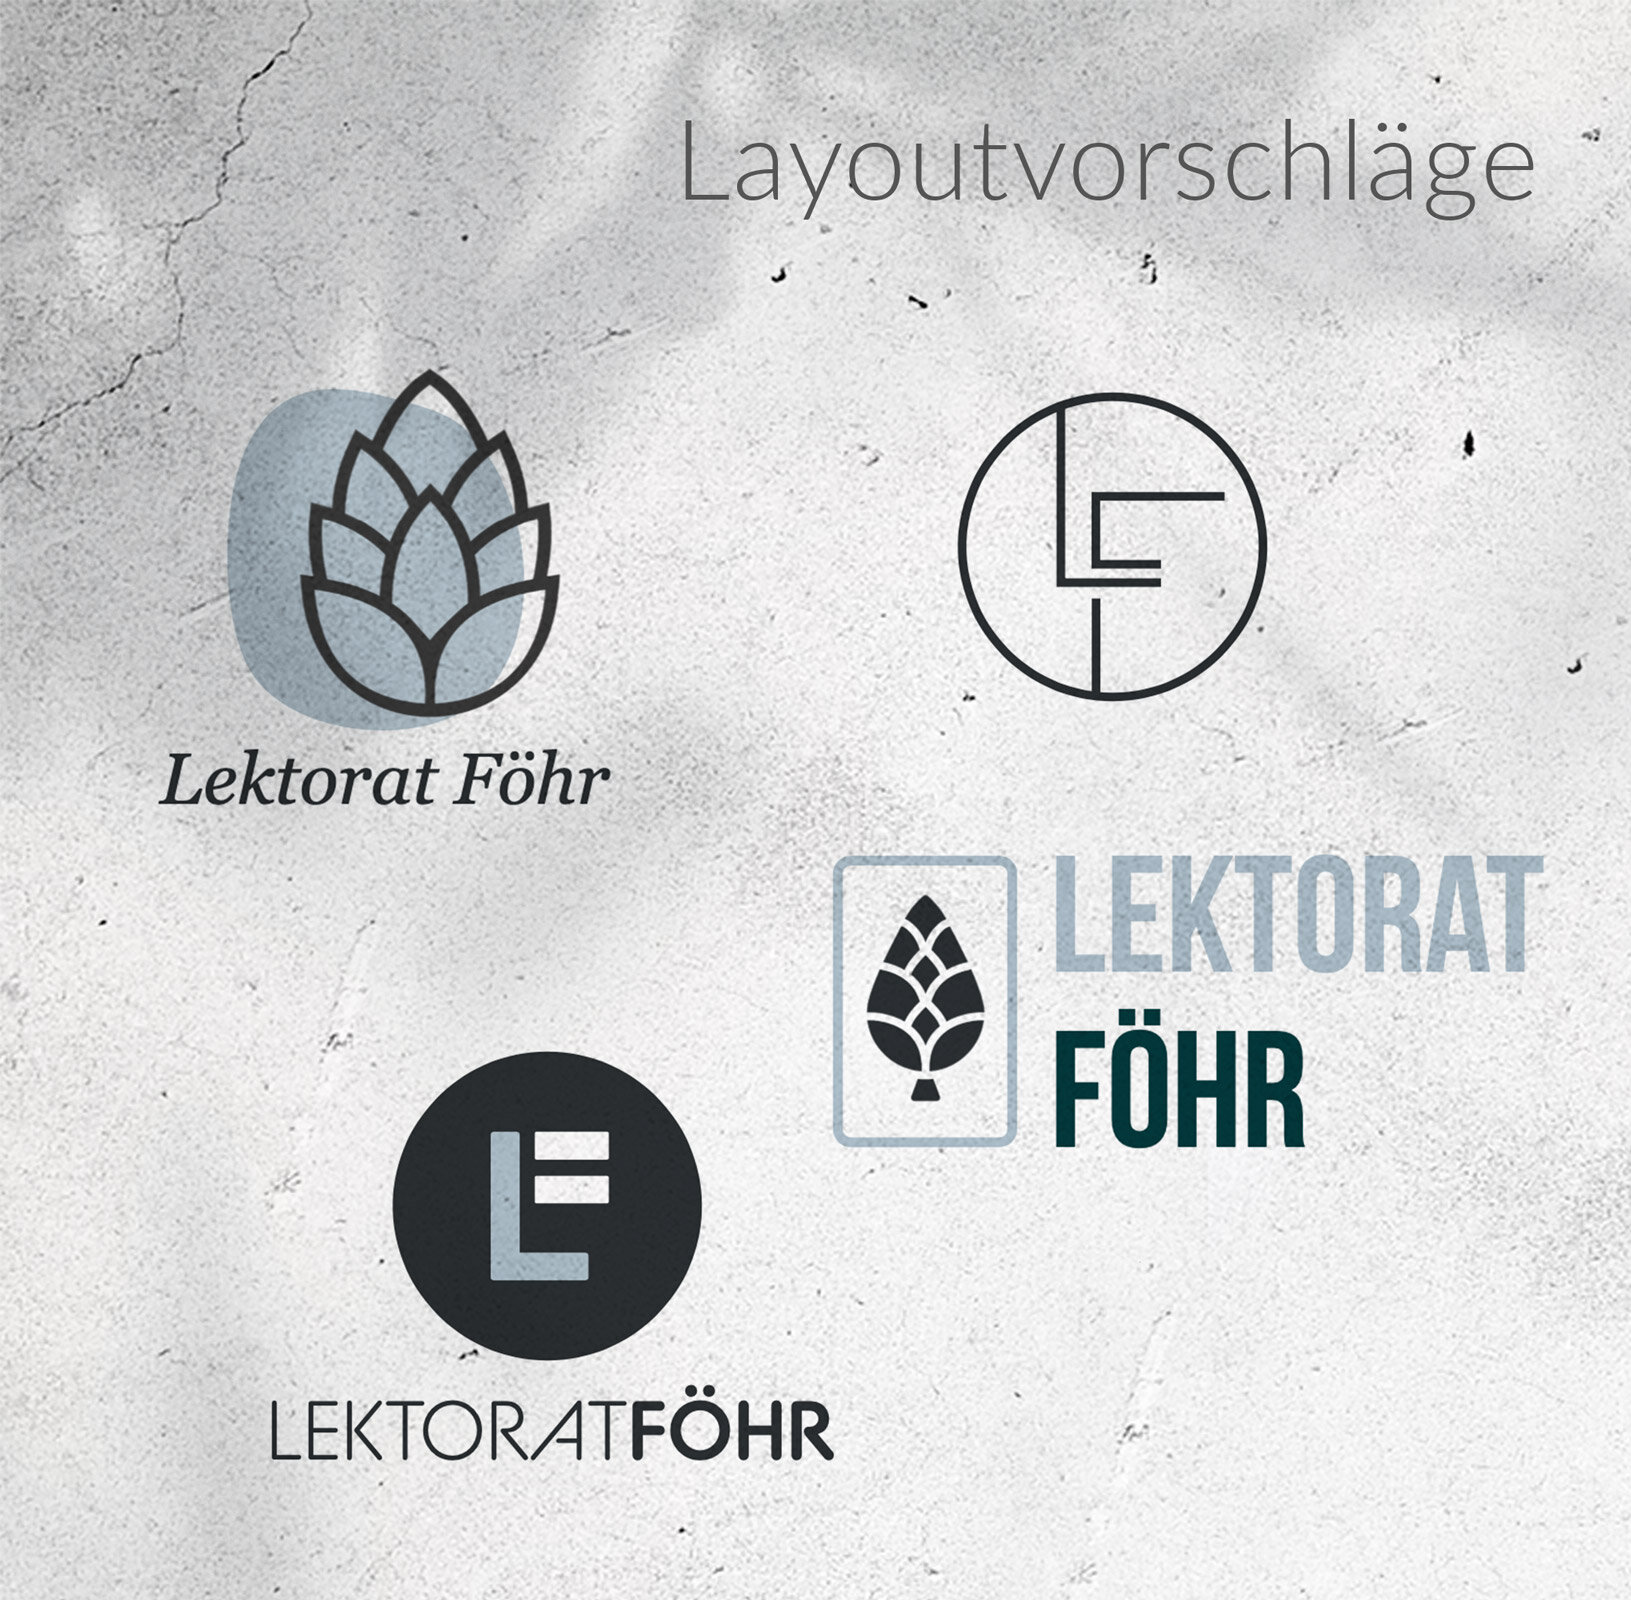 lektorat-foehr-logo-3.jpg